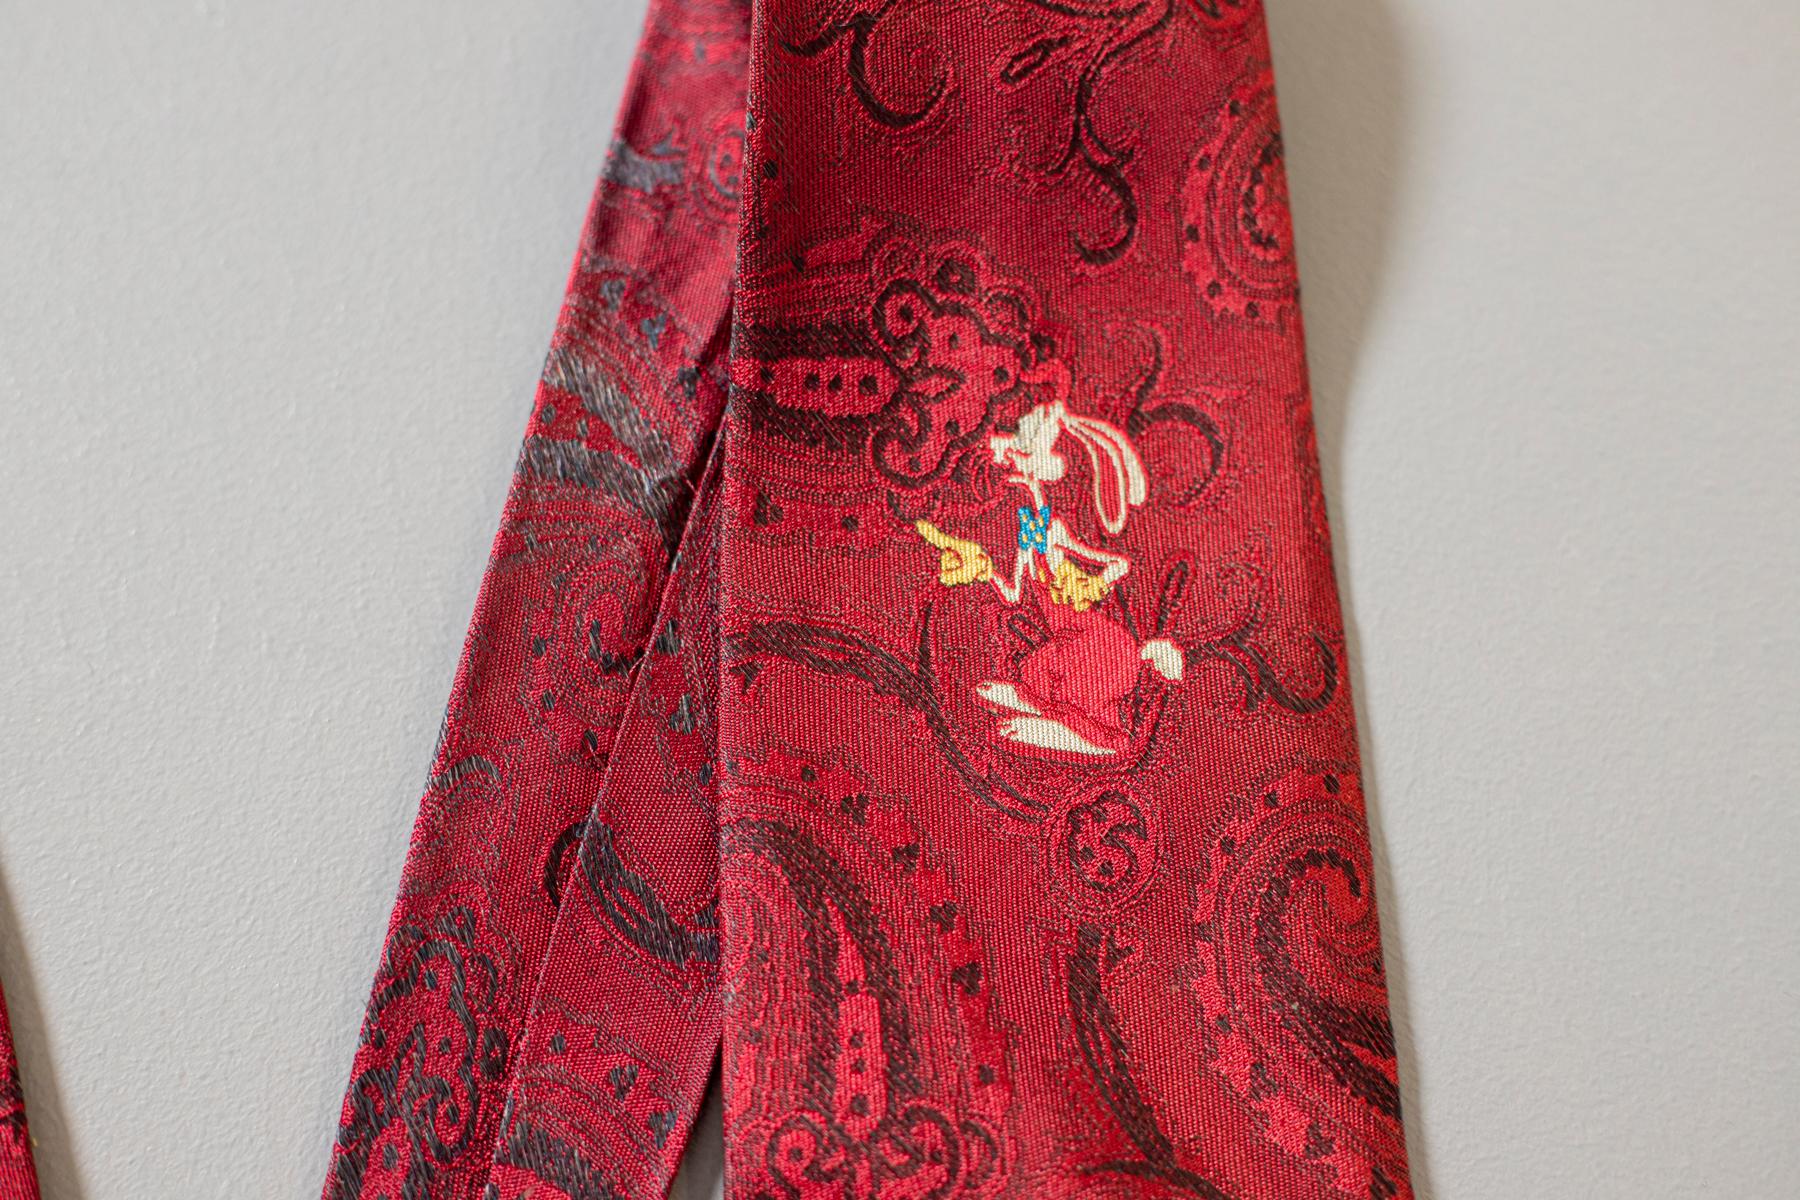 Cravate particulière conçue par Chi ha incastrato Roger Rabbit, parfaite pour les amoureux du célèbre lapin. Décorée d'un fond rouge avec des motifs paisley et avec le lapin Roger dessiné au centre. Idéal pour une soirée entre amis au cinéma ou pour